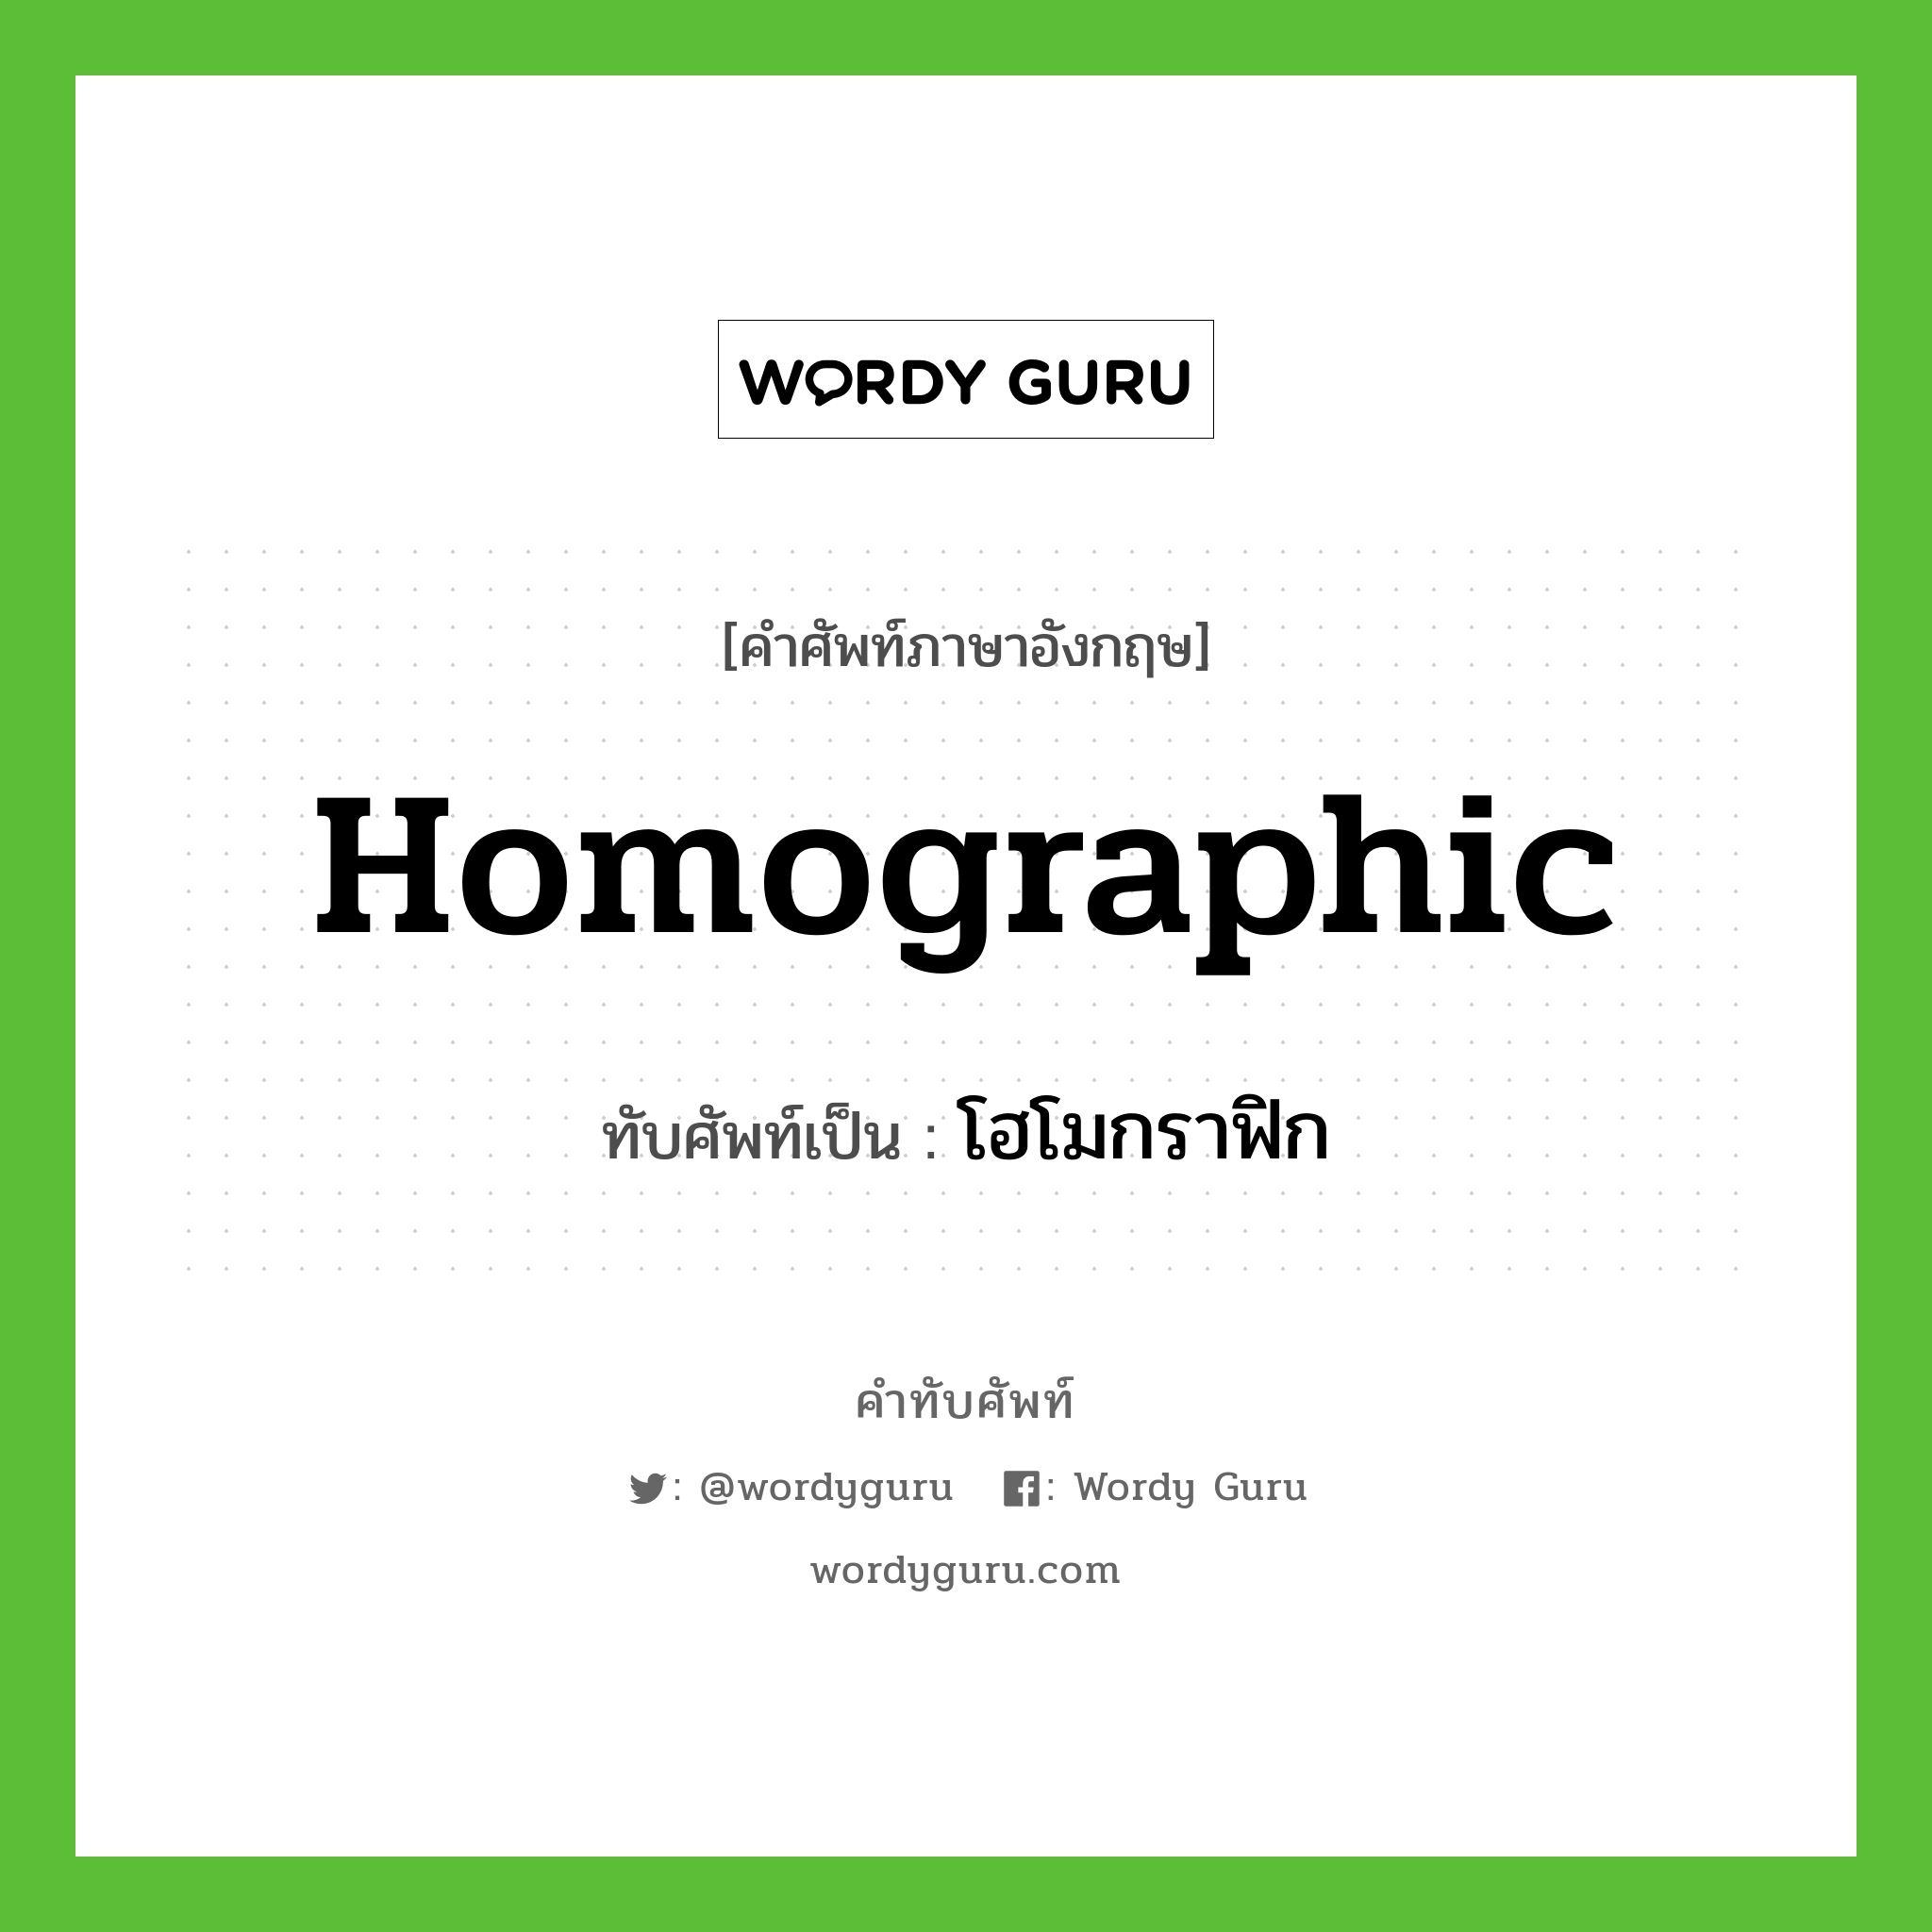 homographic เขียนเป็นคำไทยว่าอะไร?, คำศัพท์ภาษาอังกฤษ homographic ทับศัพท์เป็น โฮโมกราฟิก